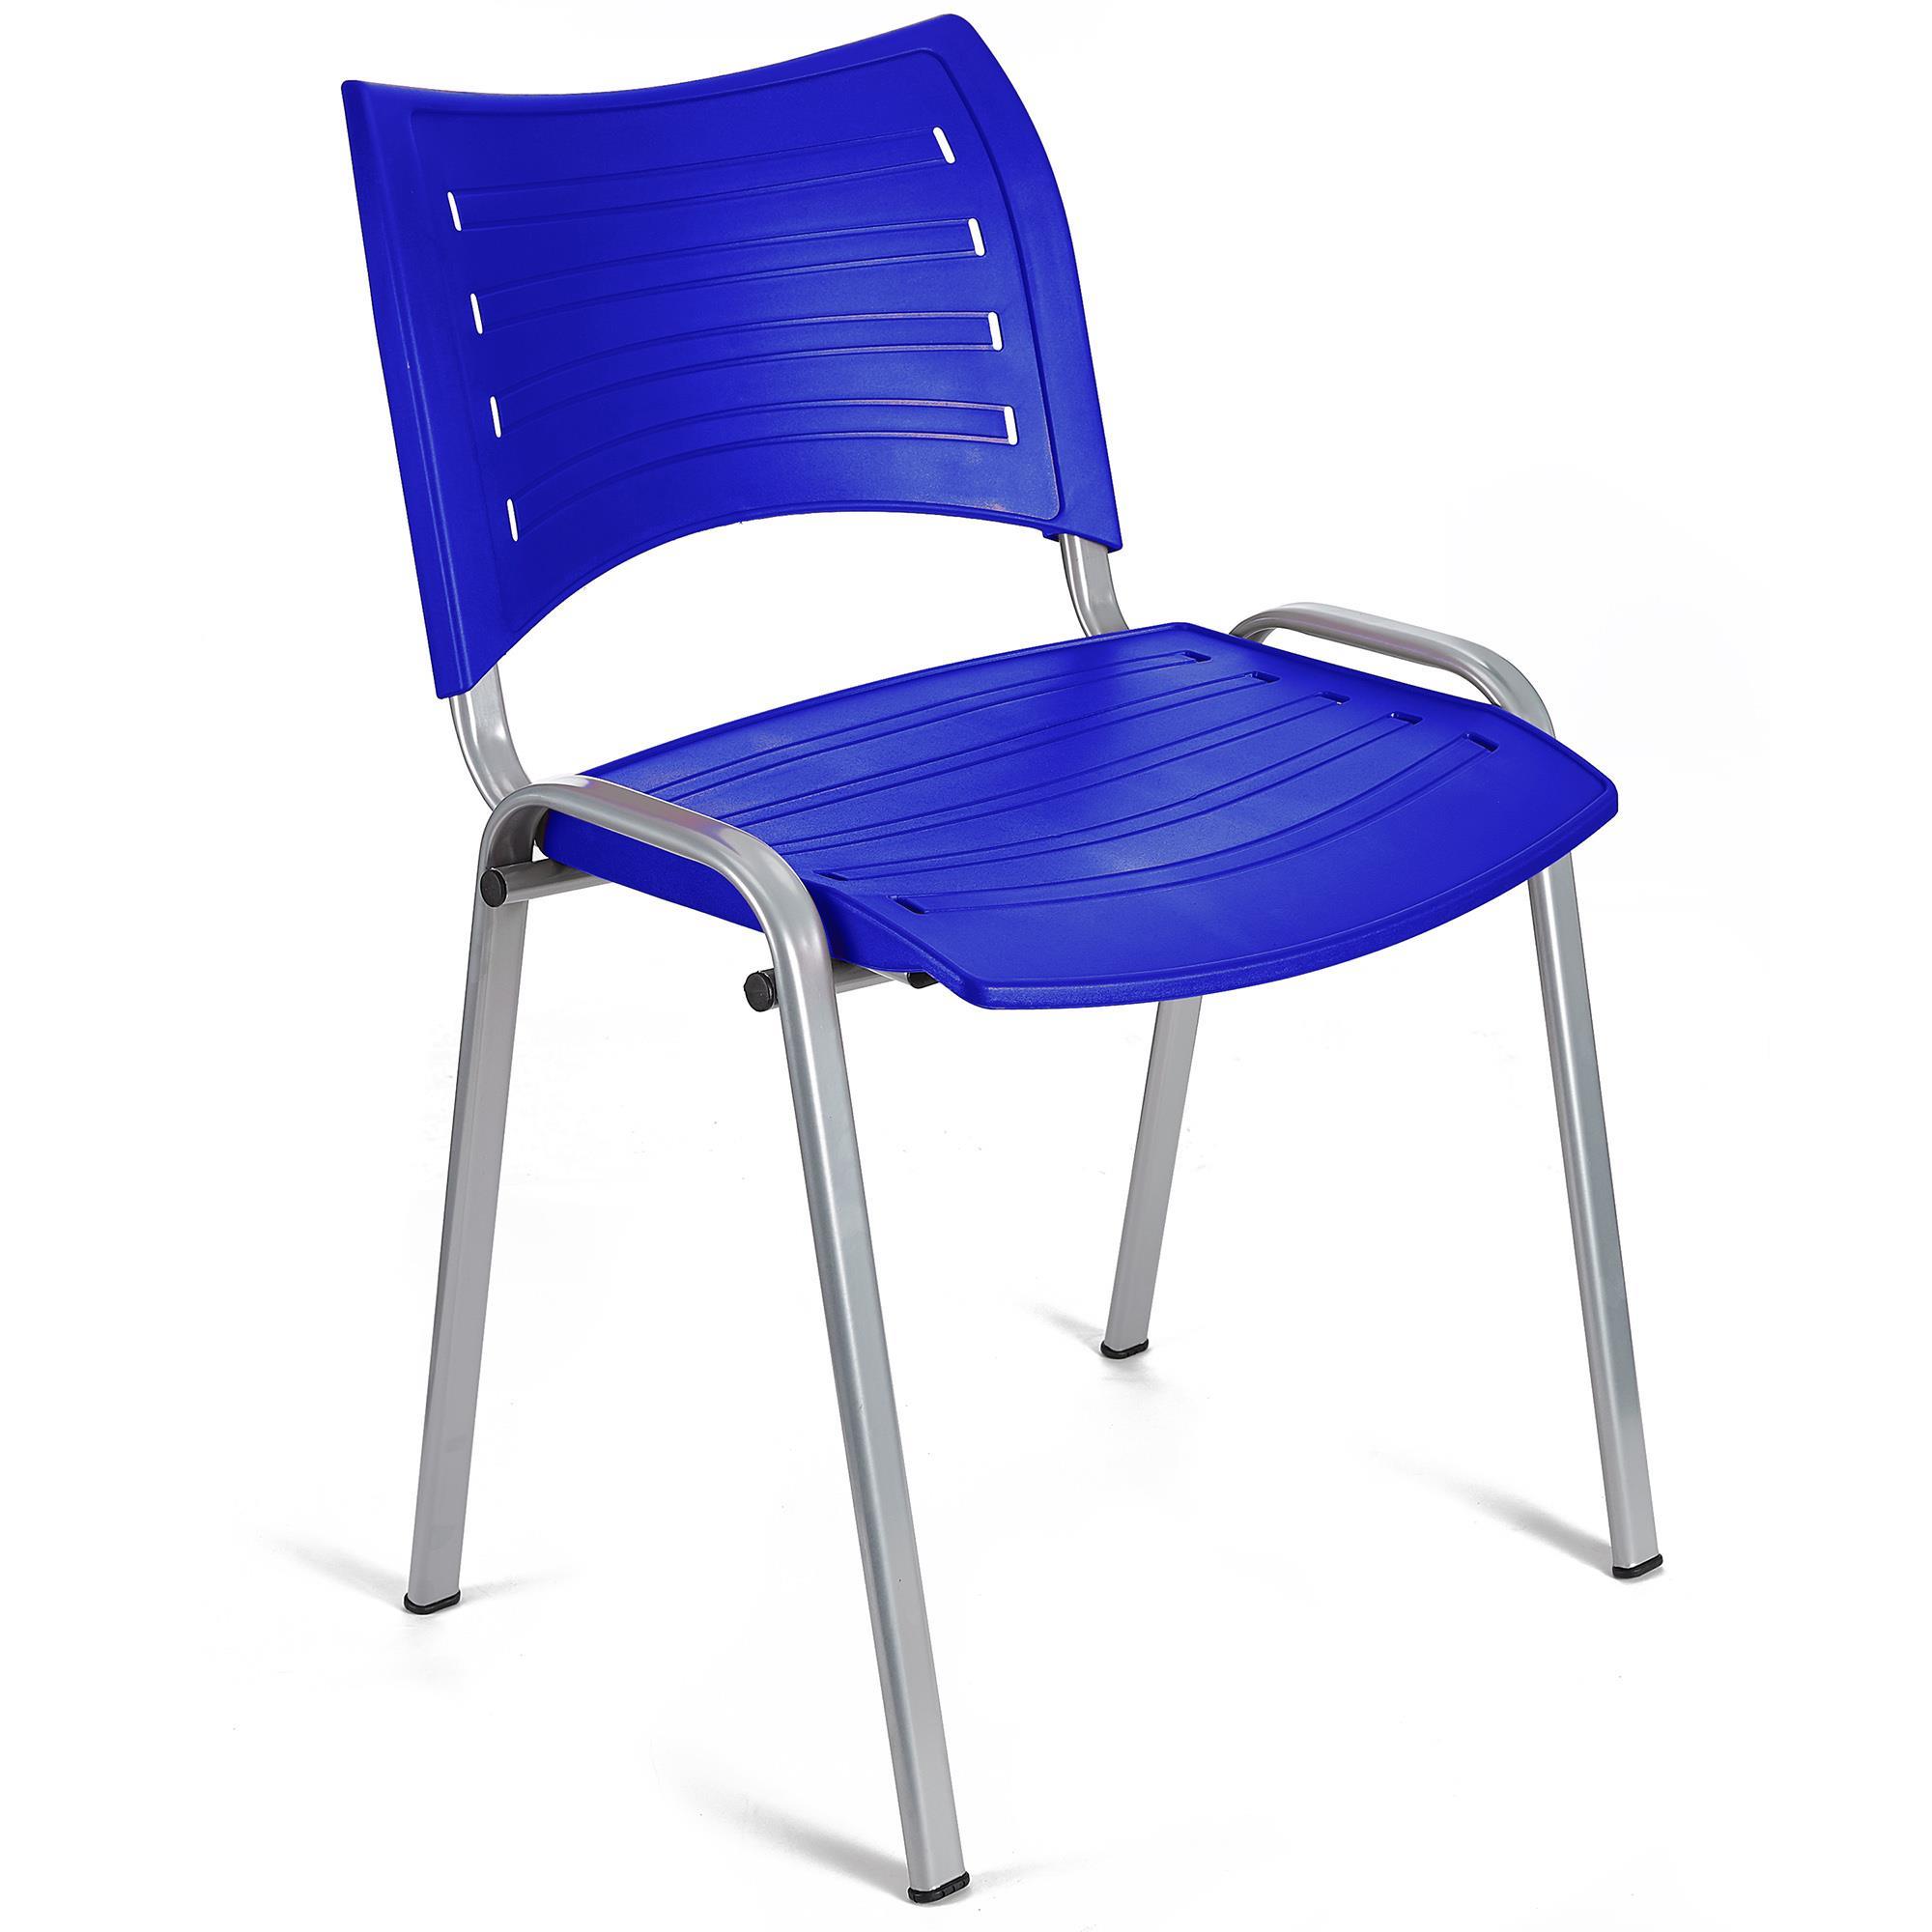 Cadeira de Visita ELVA, Empilhável e Prática, Confortável, Pernas Cinza, Cor Azul